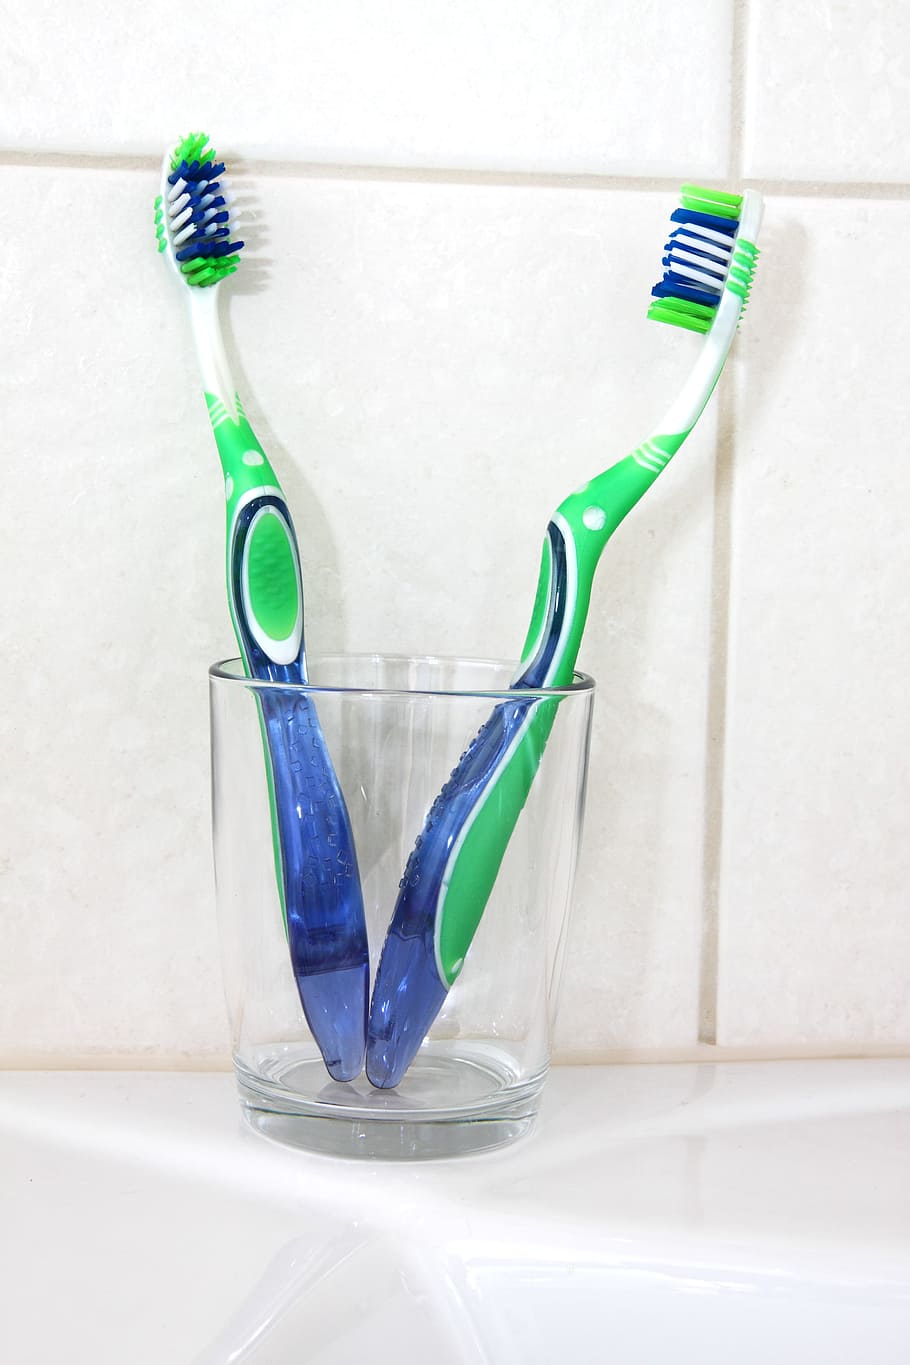 dois, verde, escovas de dentes, vidro, Banheiro, Escova, Cuidado, Limpo, Copa, dental